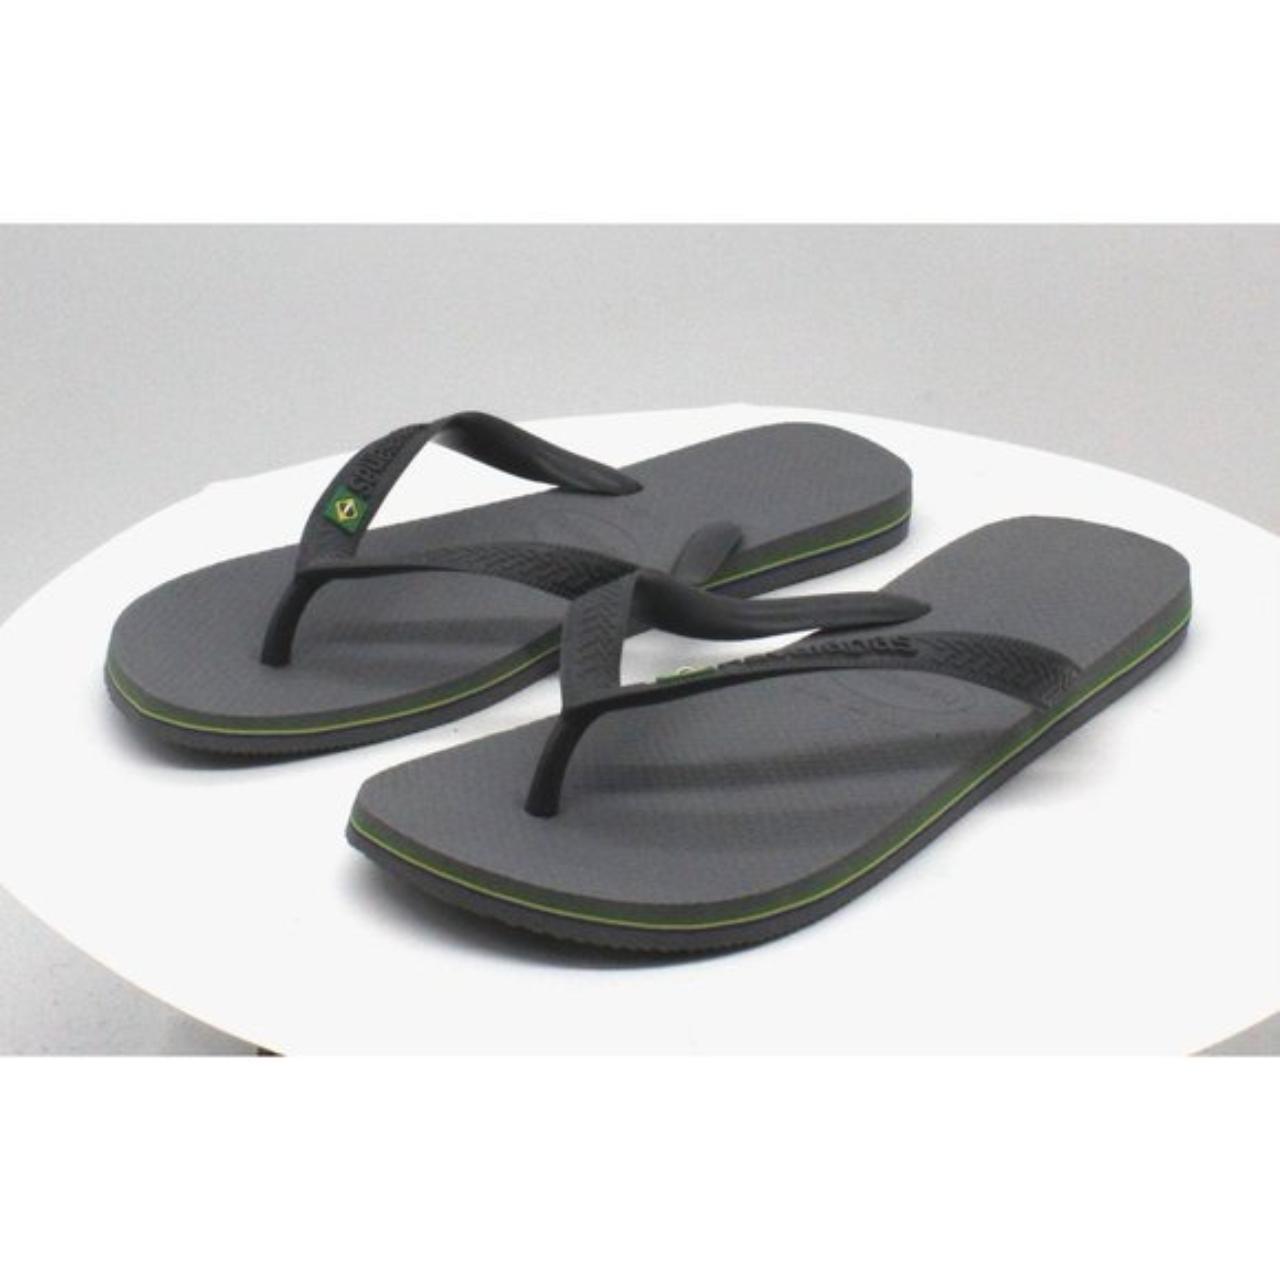 Product Image 2 - Havaianas Men's Brazil Flip-Flop Sandals